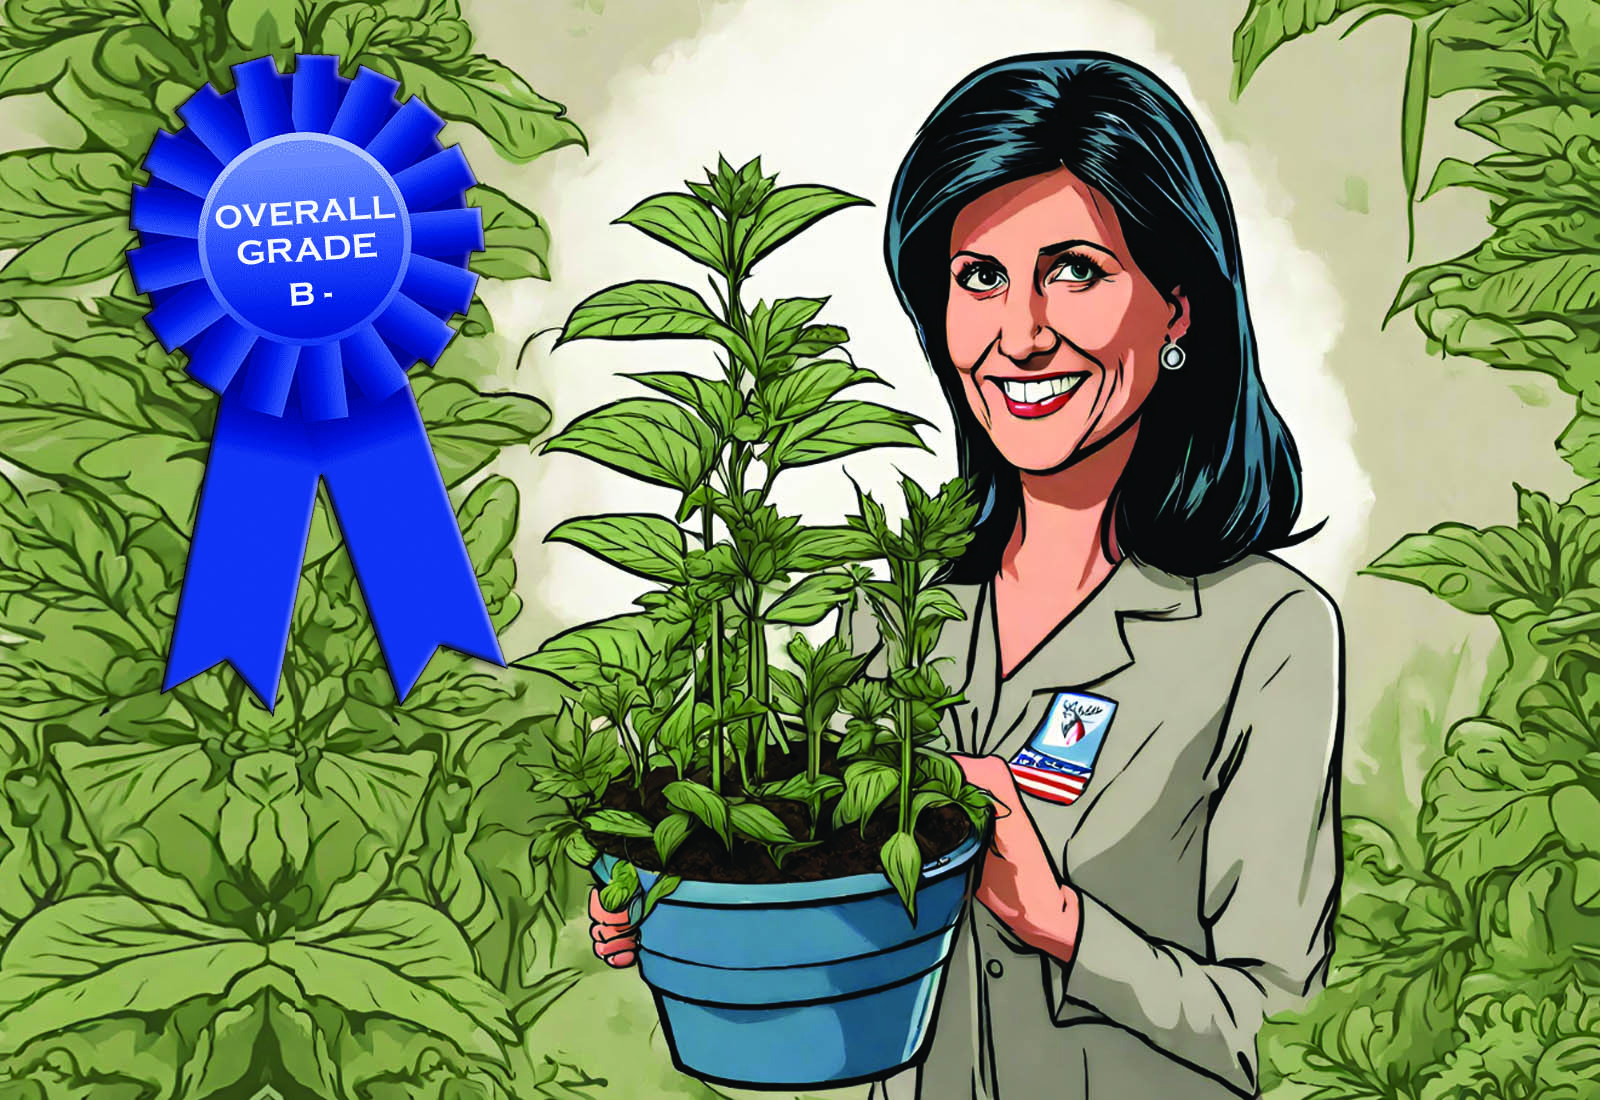 Оценка кандидатов в президенты по марихуане: Никки Хейли